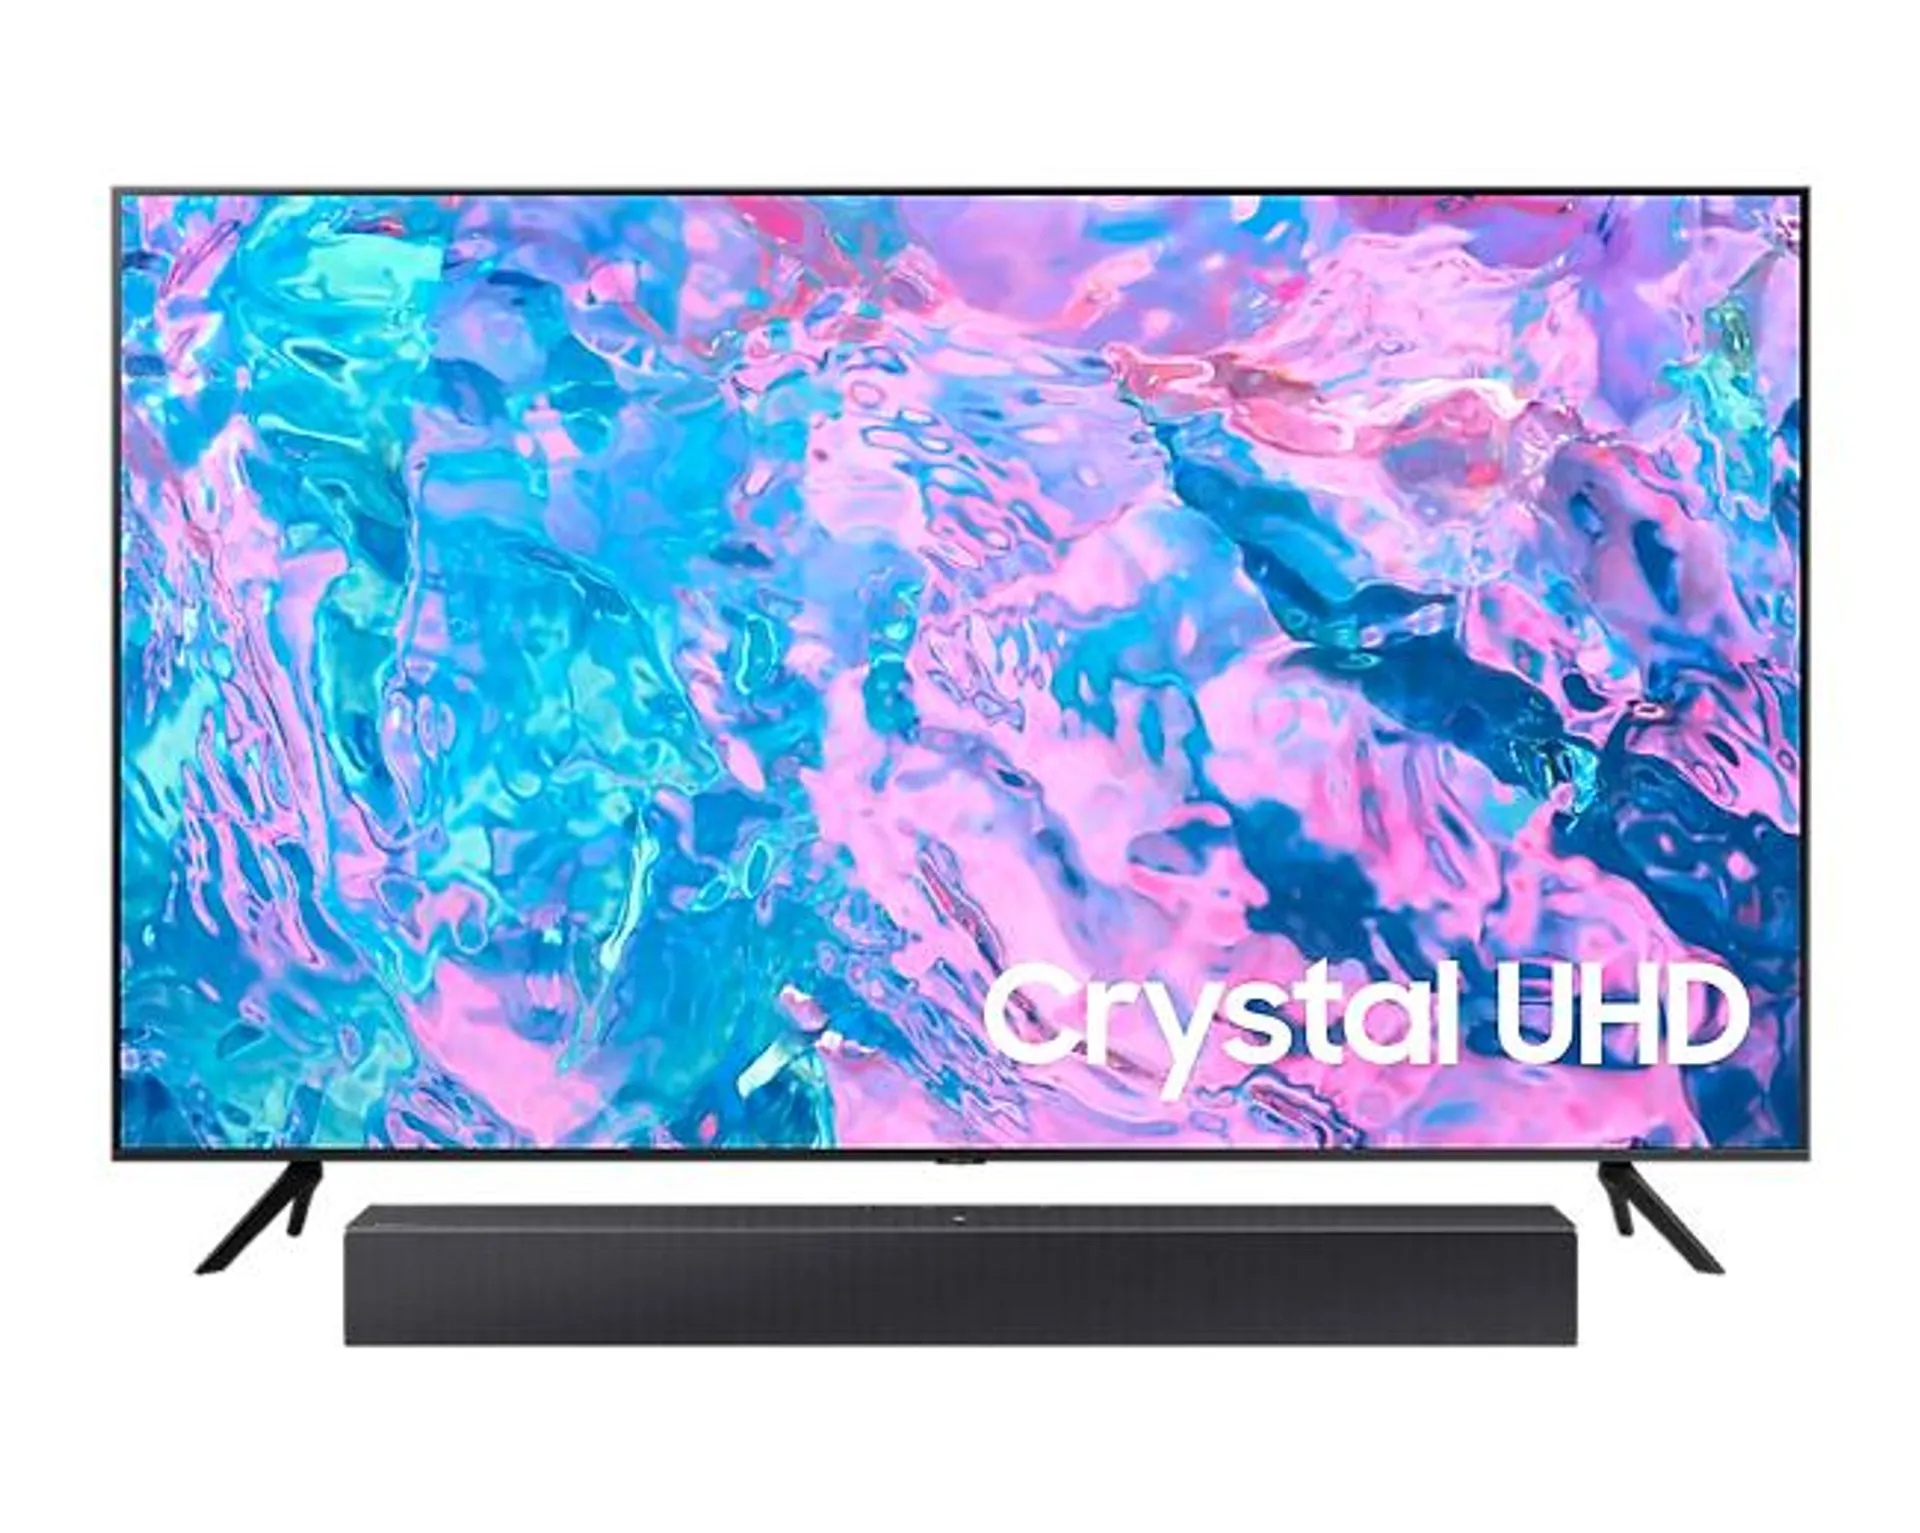 Combo TV Crystal UHD UN50CU7000 + Barra HW-C400